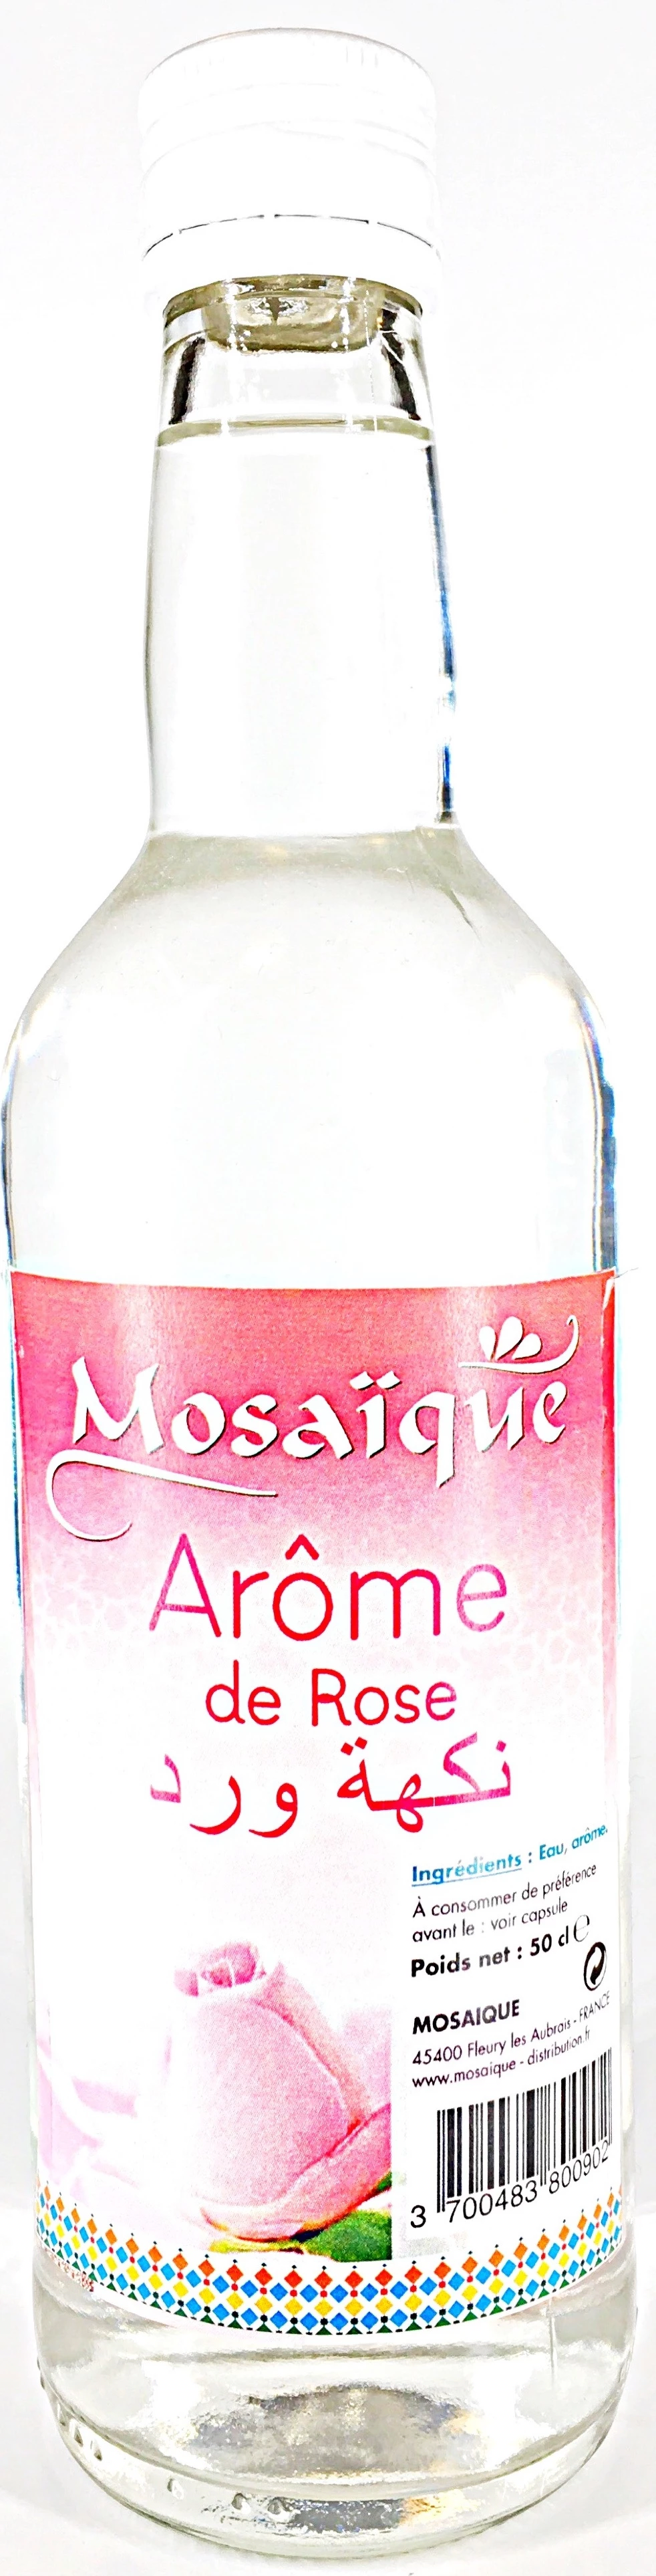 Arome Rose 50cl - MOSAIQUE